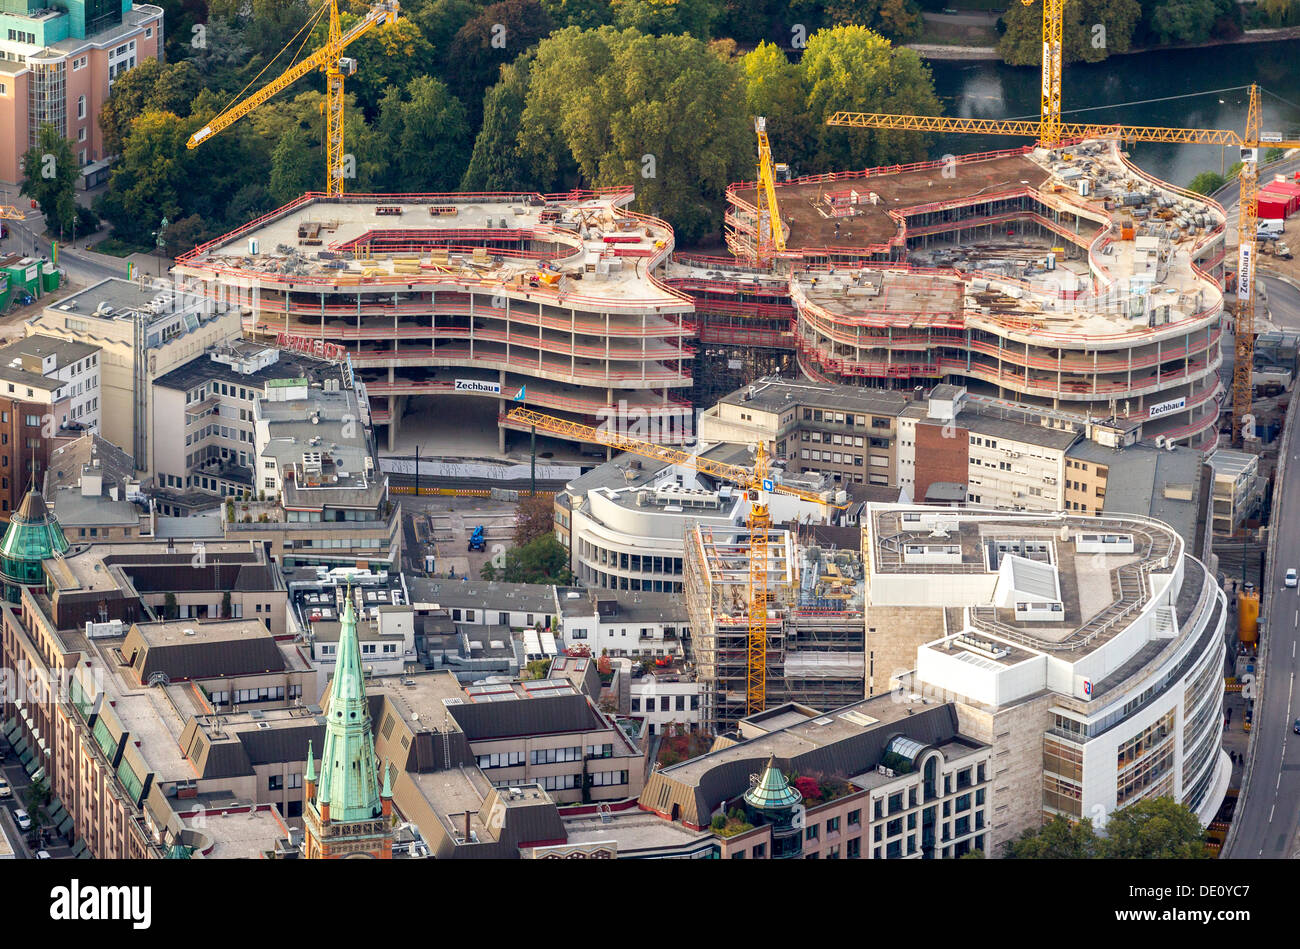 Aerial view, Koe-Bogen building complex, Schadowstrasse street, Duesseldorf, Rhineland region, North Rhine-Westphalia Stock Photo